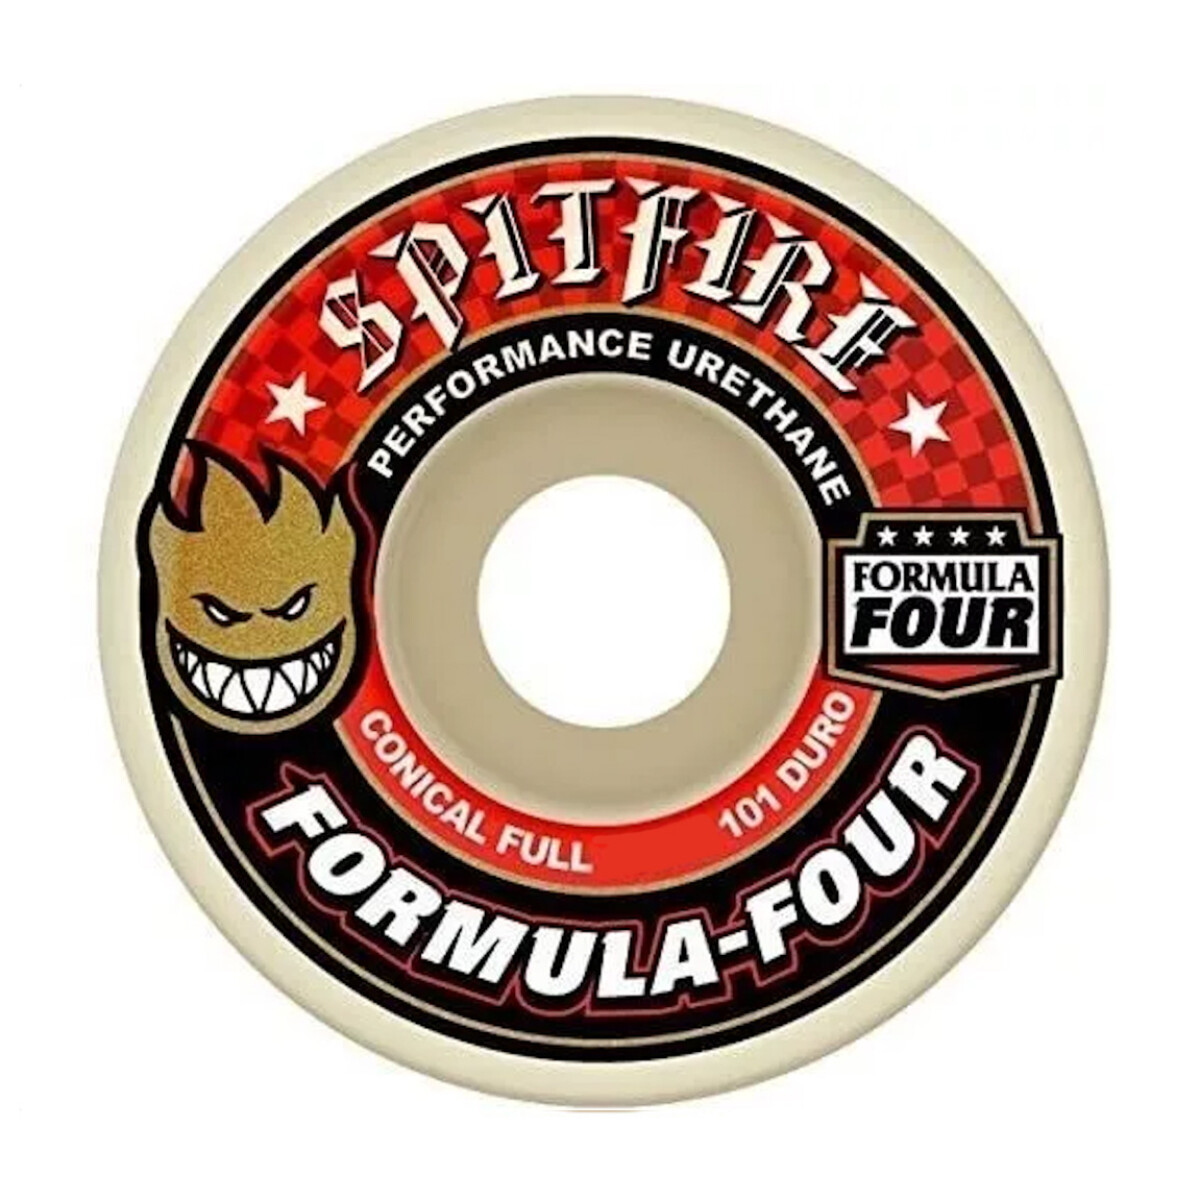 Ruedas de Skate Spitfire Formula Four Conical Full (Red) 56mm 101A 